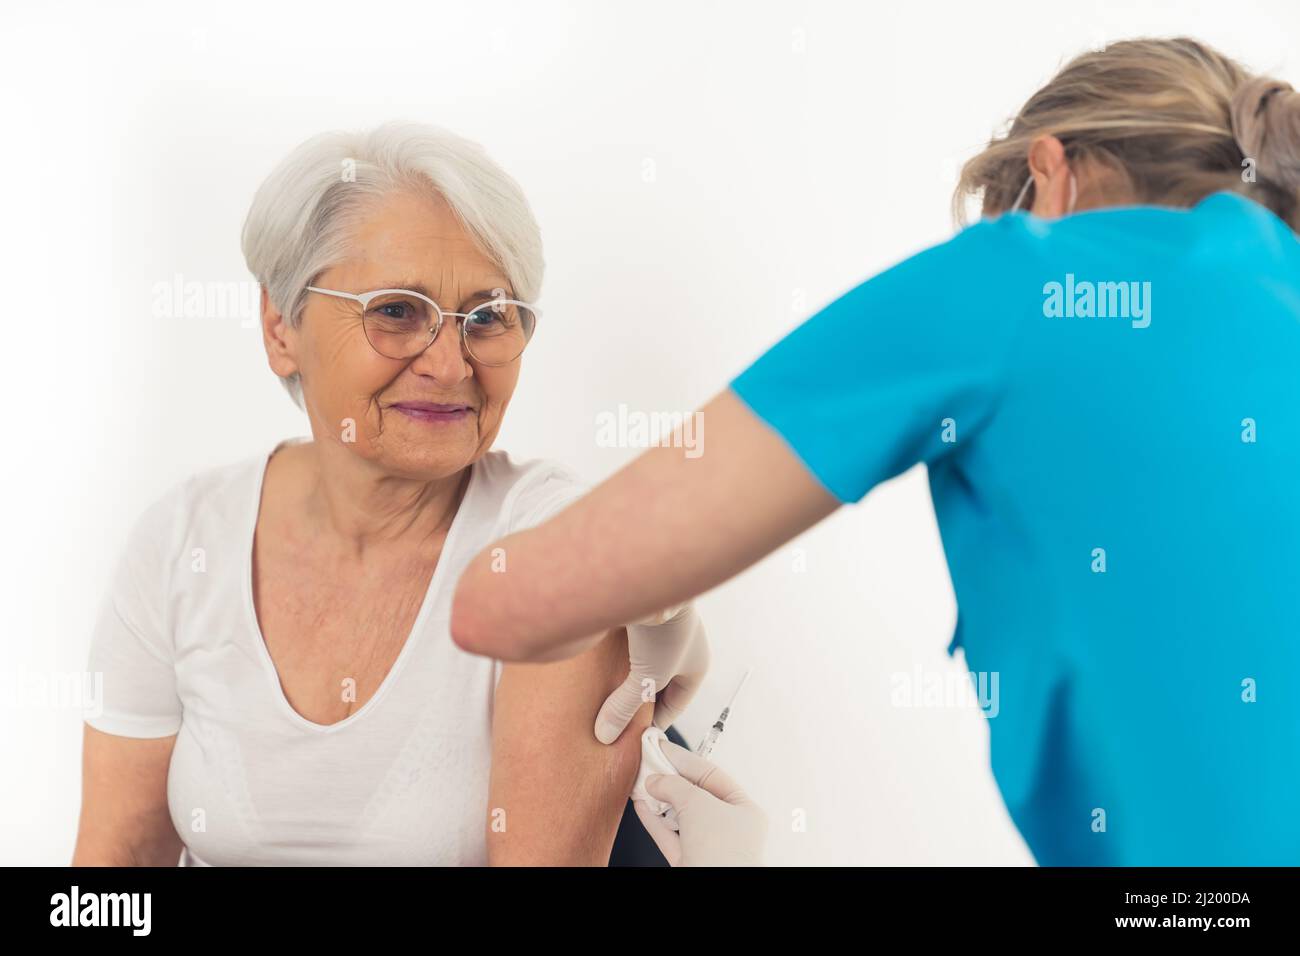 La nonna europea allegra è stata vaccinata. Misure di sicurezza e concetti sanitari. Foto di alta qualità Foto Stock